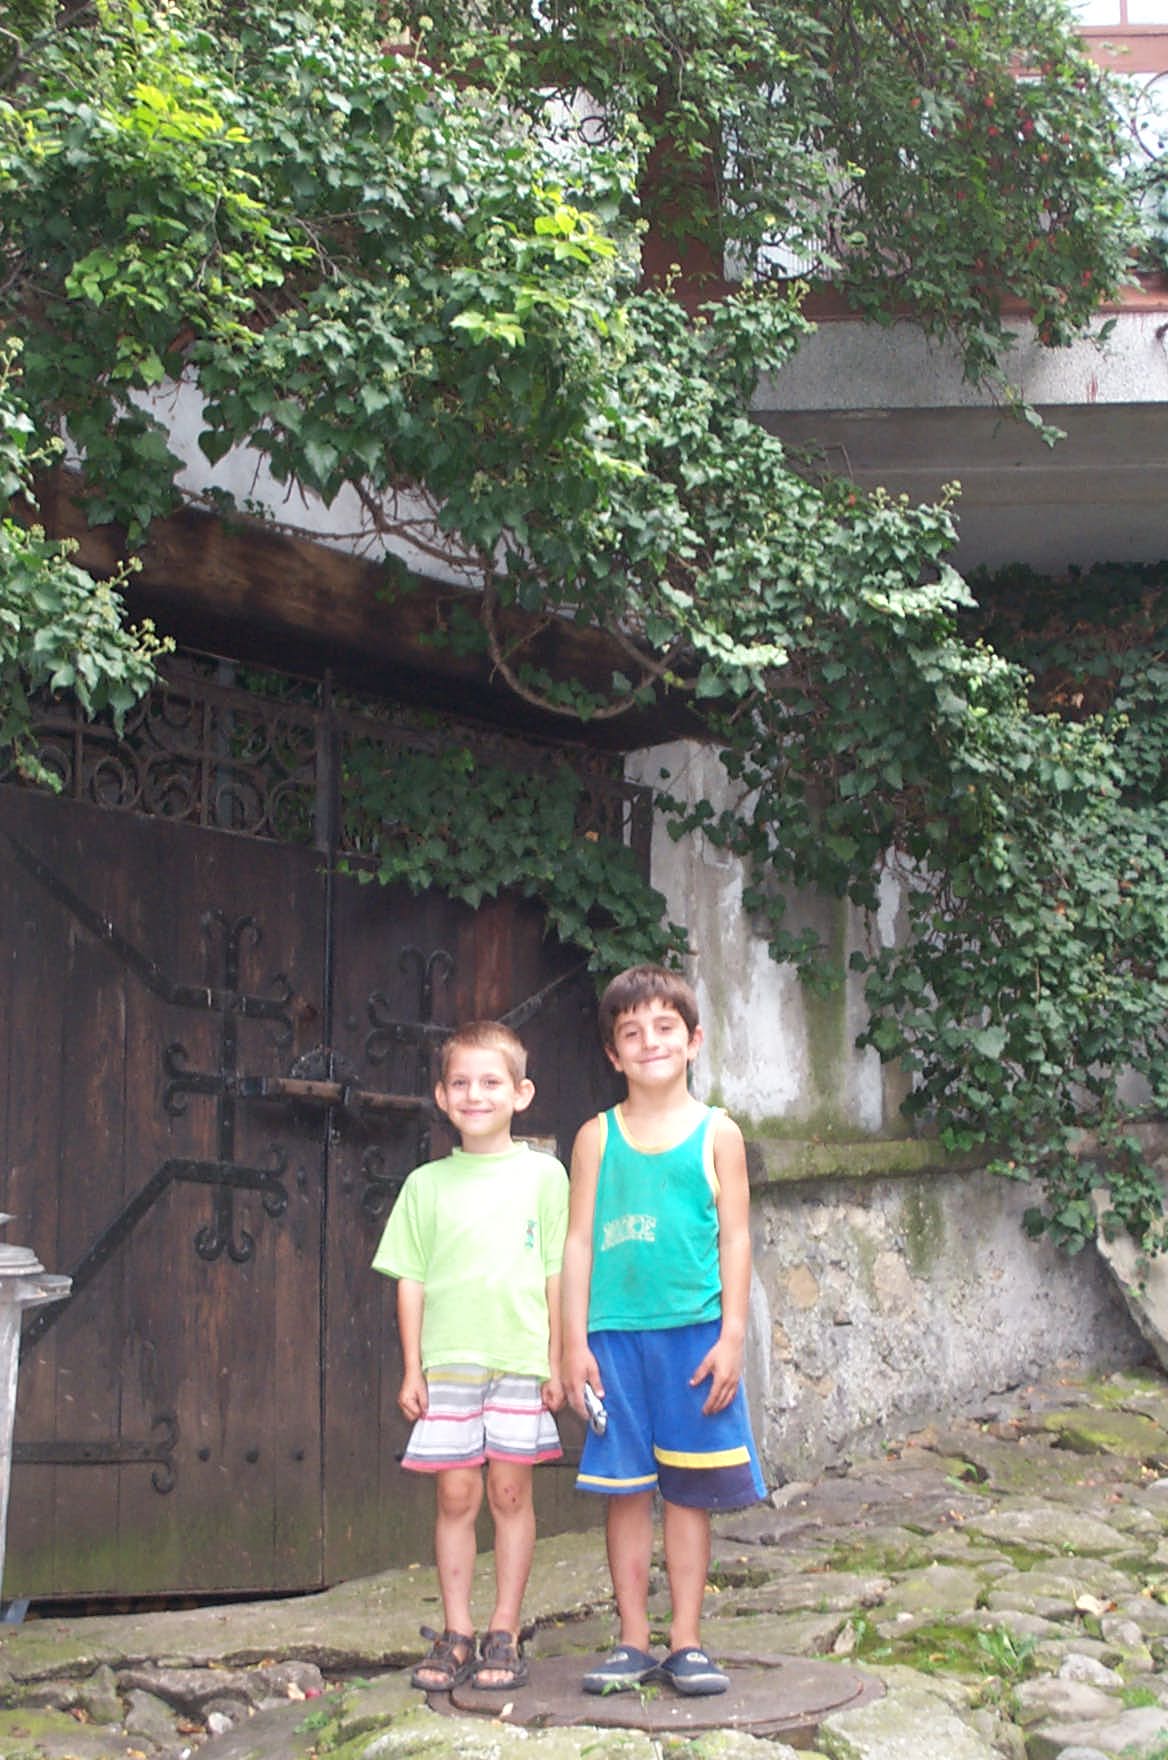 Bulgarien Veliko Tarnovo Diese beiden Jungs verfolgten mich durch die ganze Stadt. Gibt es so wenige Touristen, das ich so interessant bin?